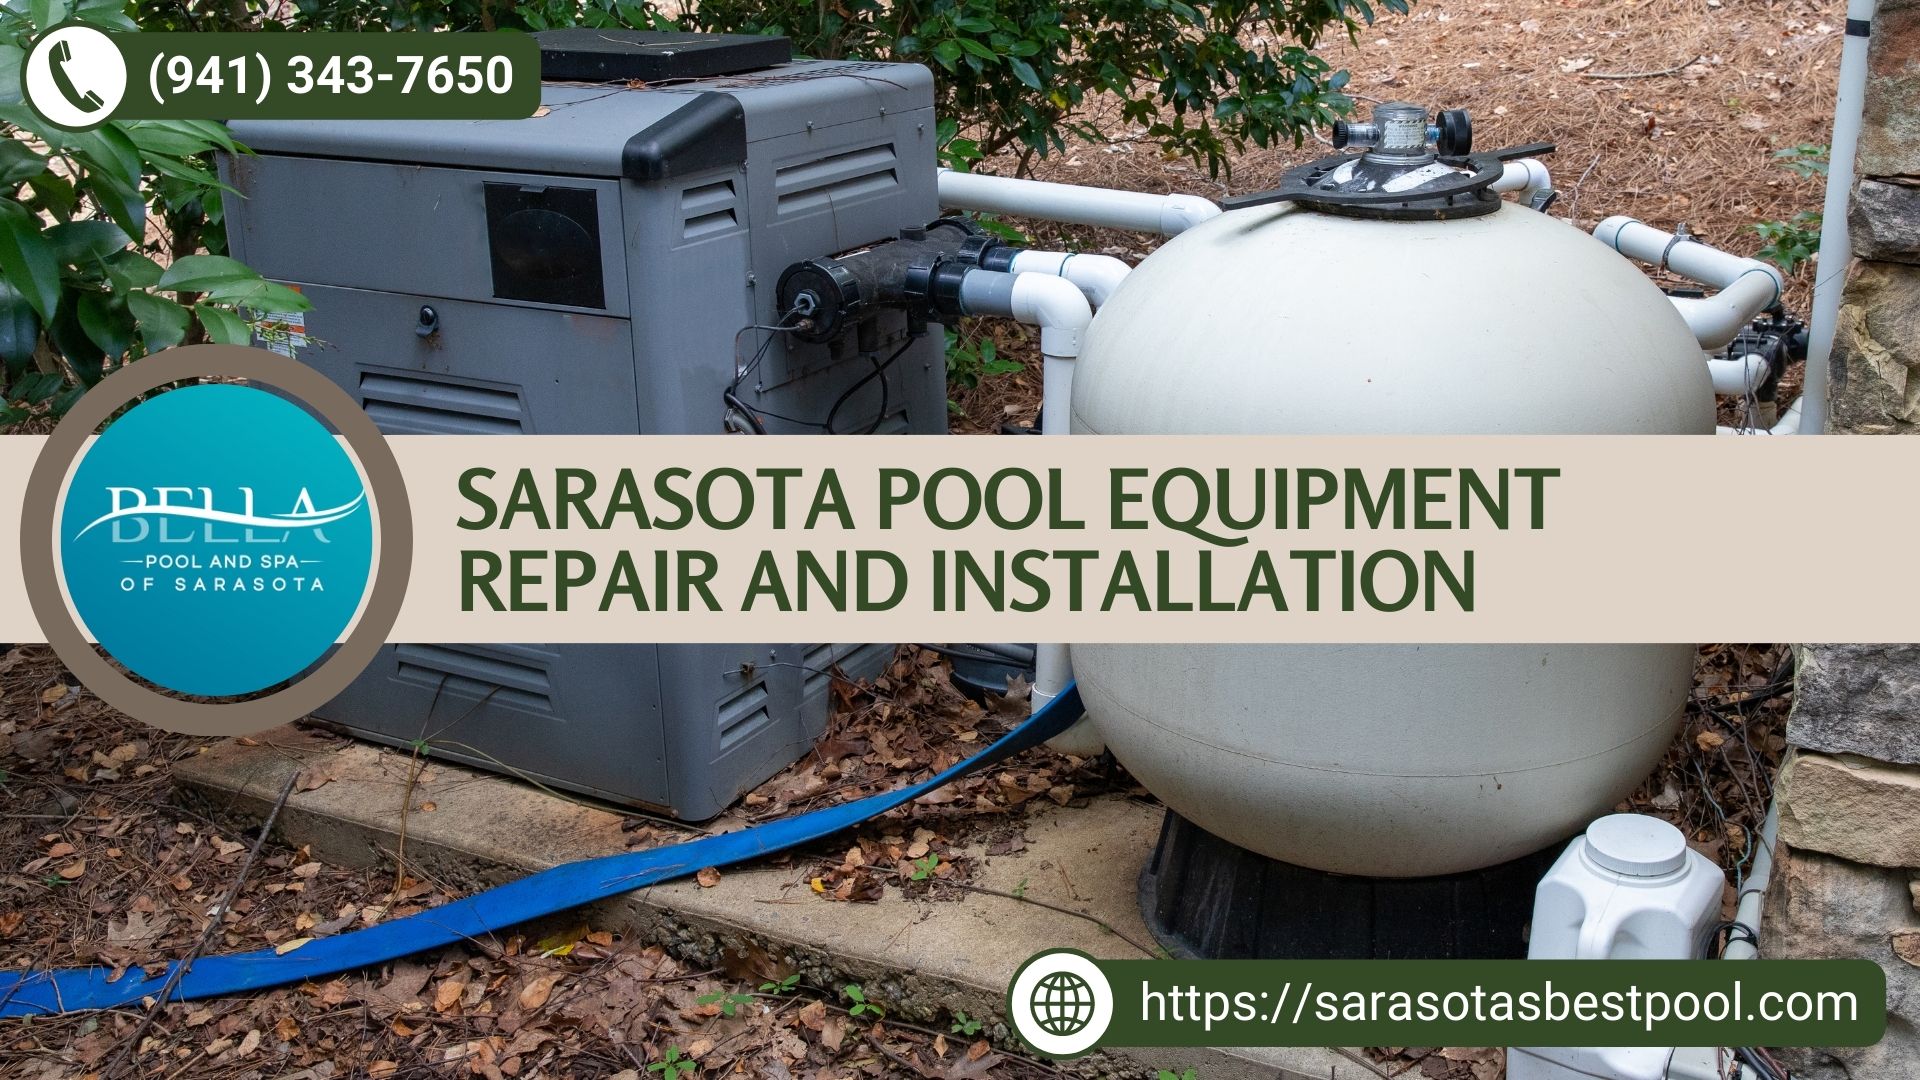 Sarasota Pool Equipment Repair and Installation by Bella Pool and Spa of Sarasota